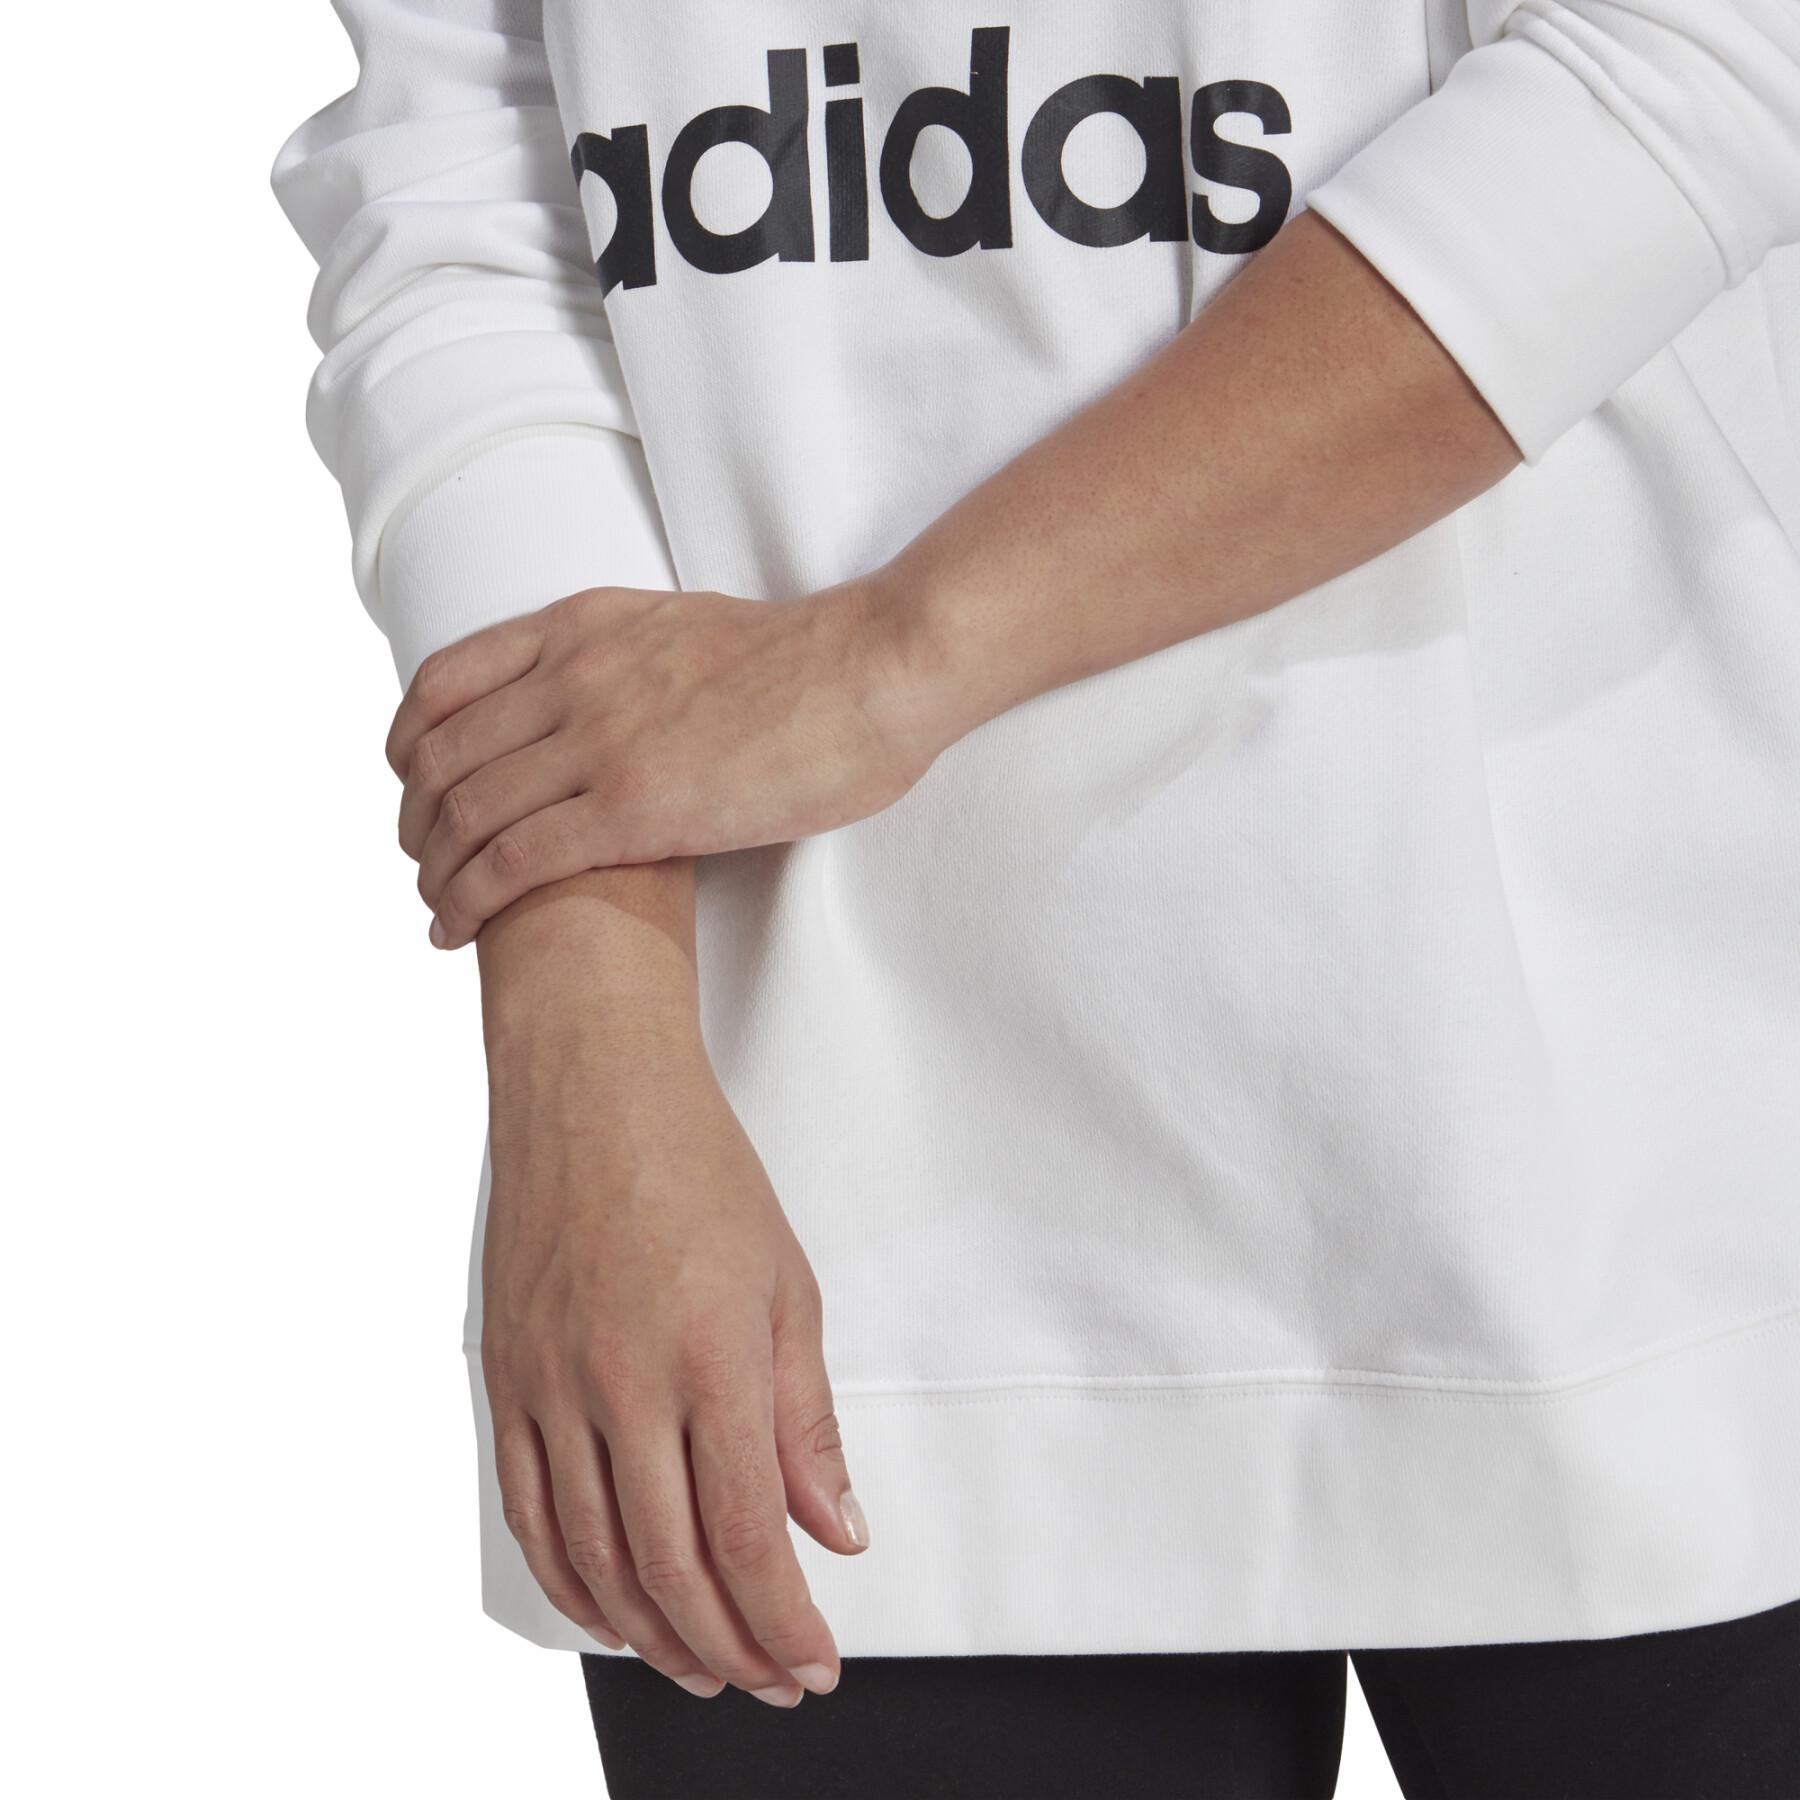 Sweatshirt i stor storlek kvinna adidas Originals Trefoil